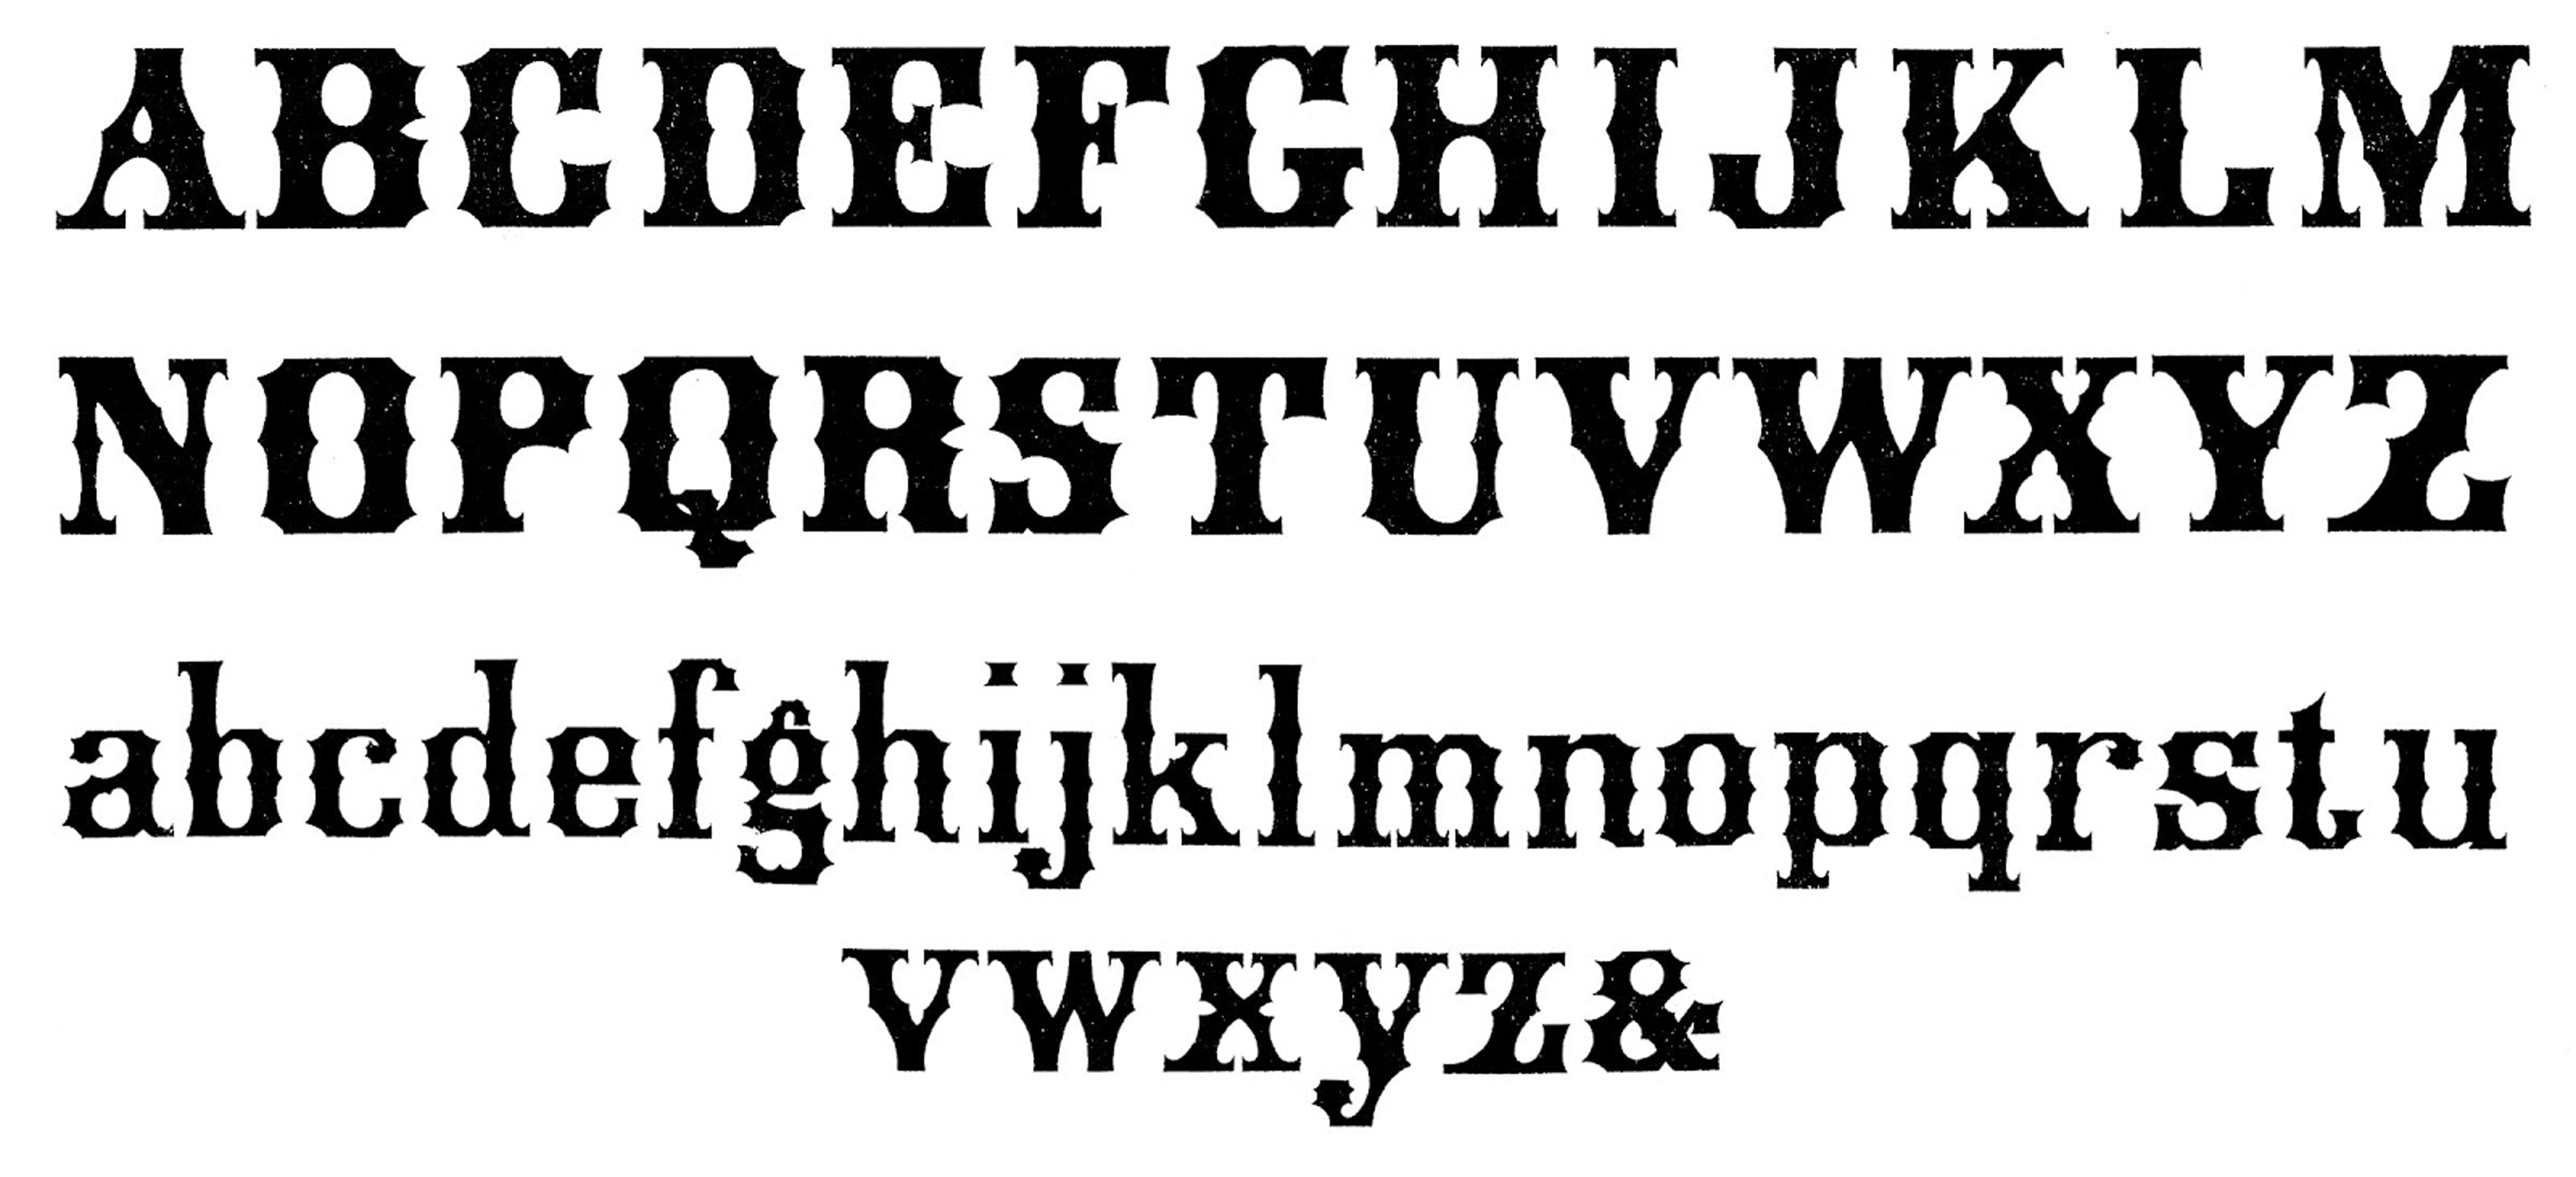 Vintage Retro Style Alphabet Lettering Alphabet Fonts - vrogue.co